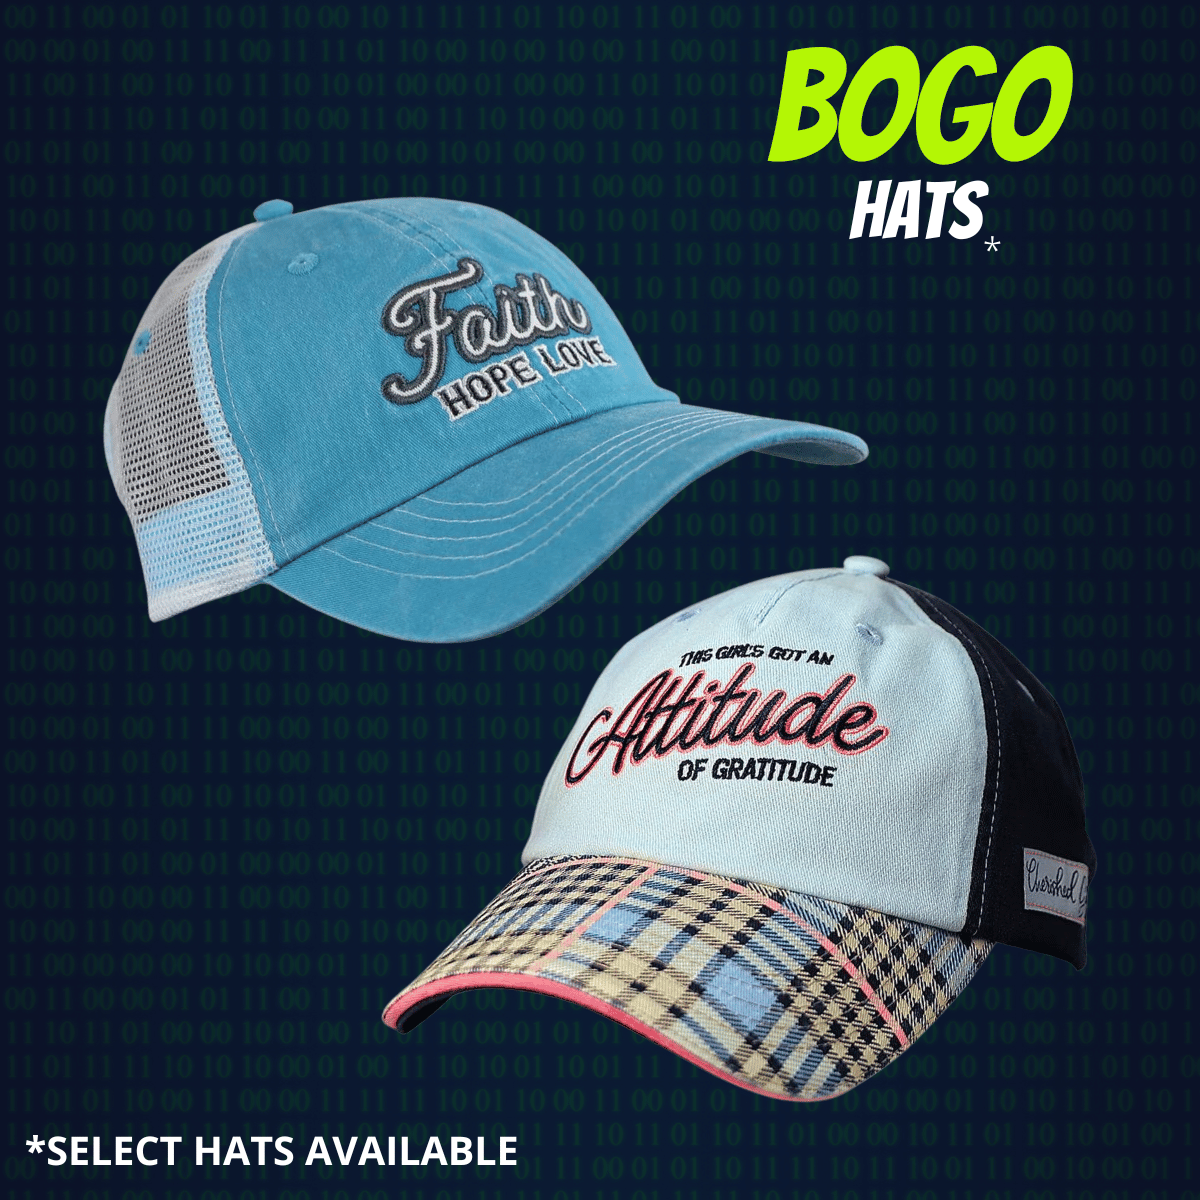 BOGO Hats